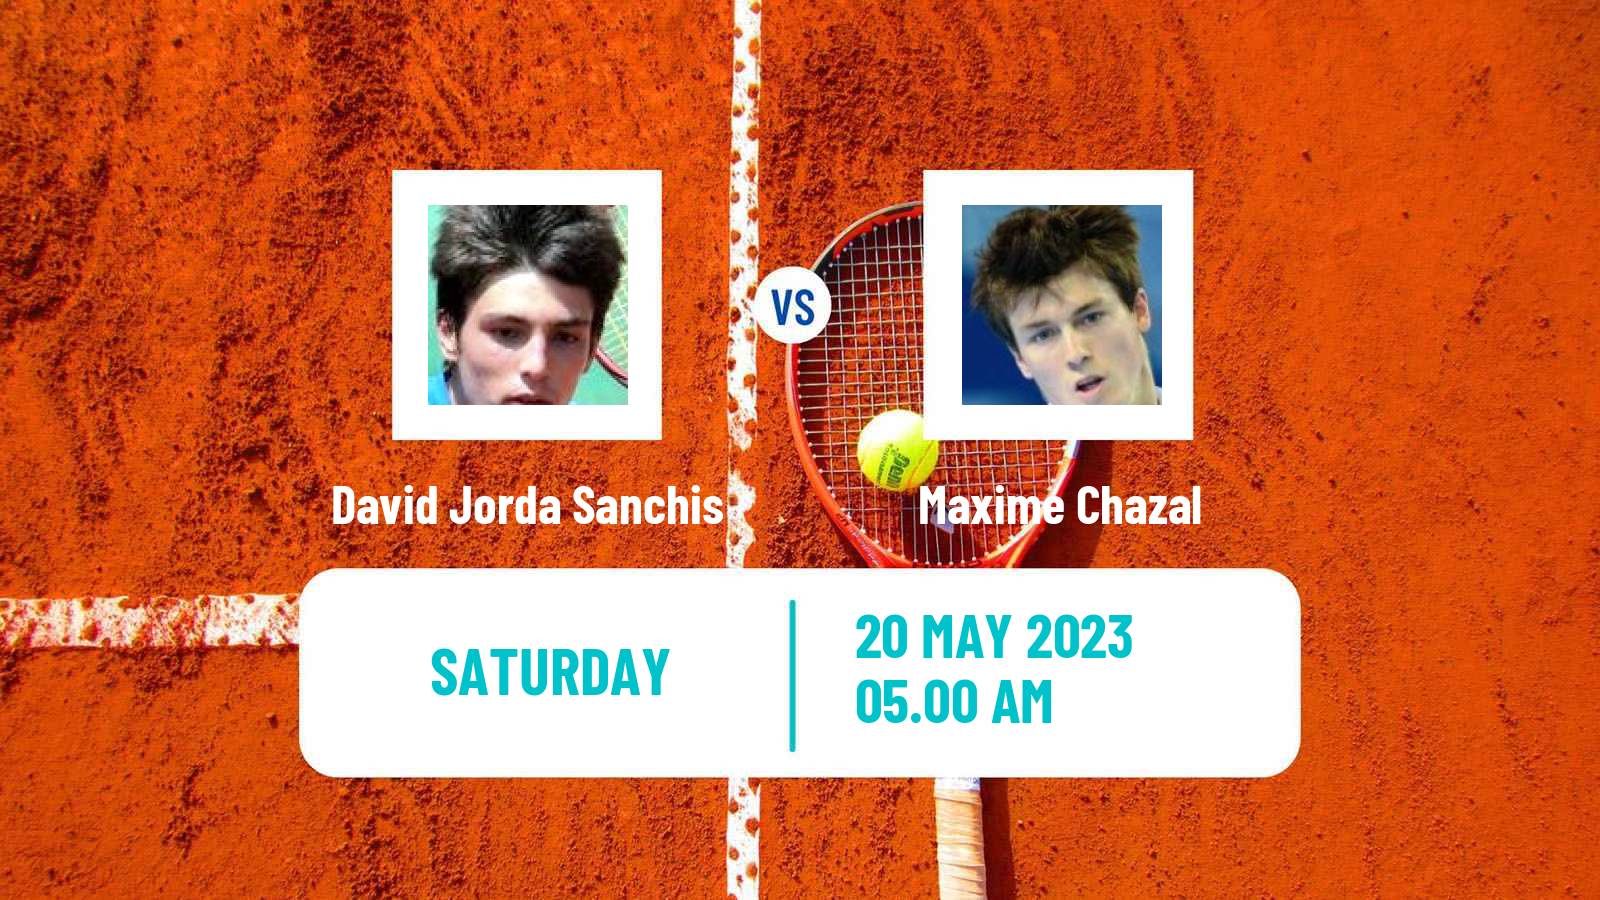 Tennis ITF M25 Gurb Men David Jorda Sanchis - Maxime Chazal